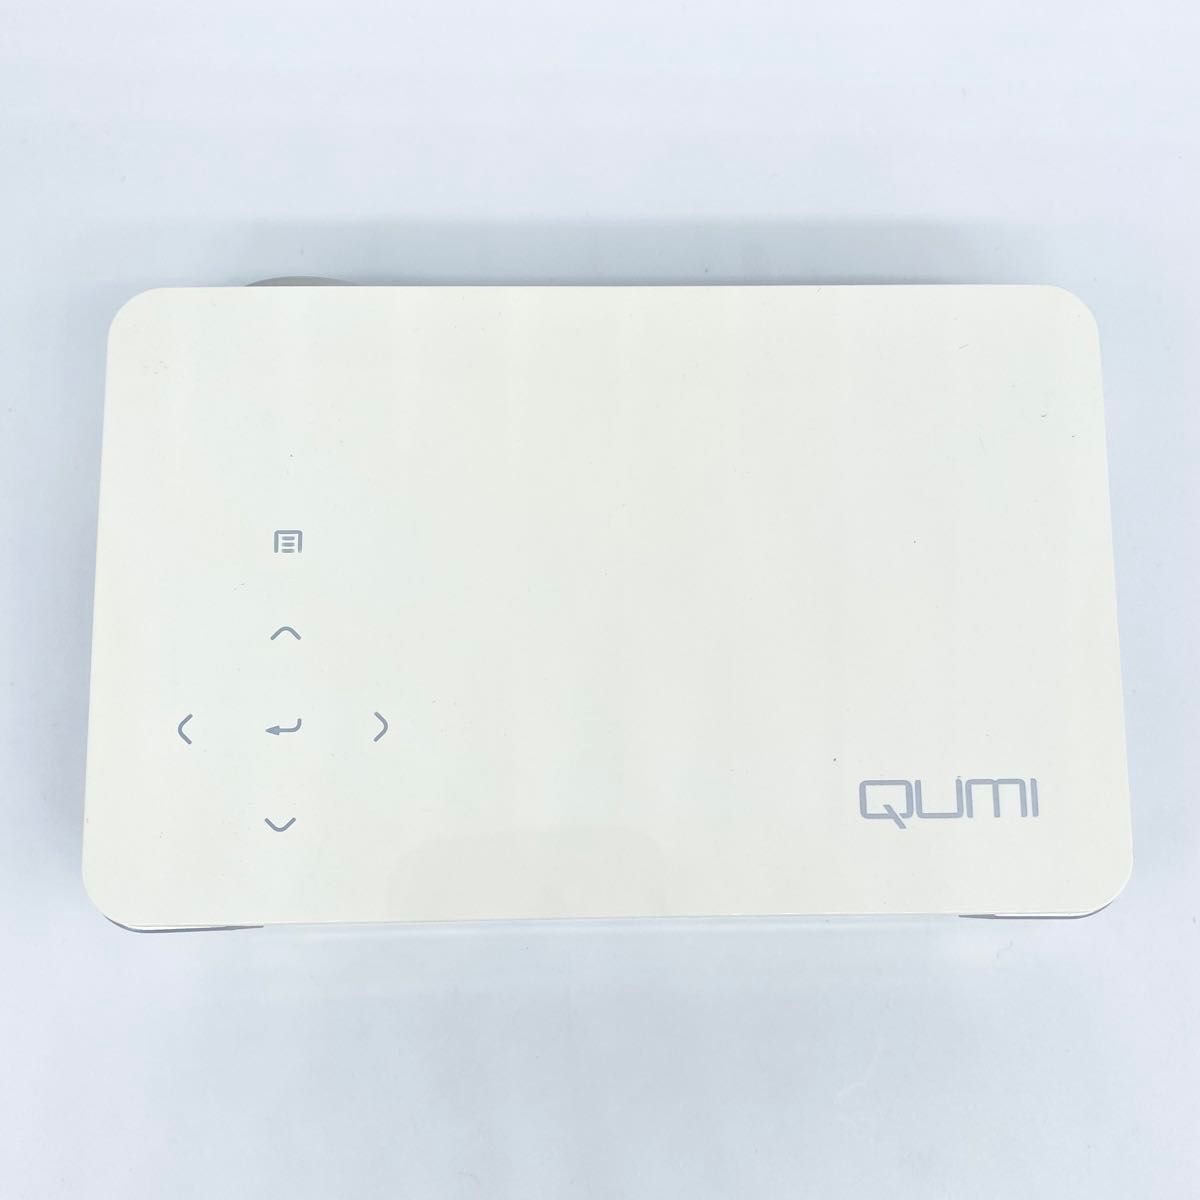 即配【美品】VIVItak ヴィヴィテック QUMI Q5-WT ホワイト LEDモバイルプロジェクター 動作確認済 送料無料